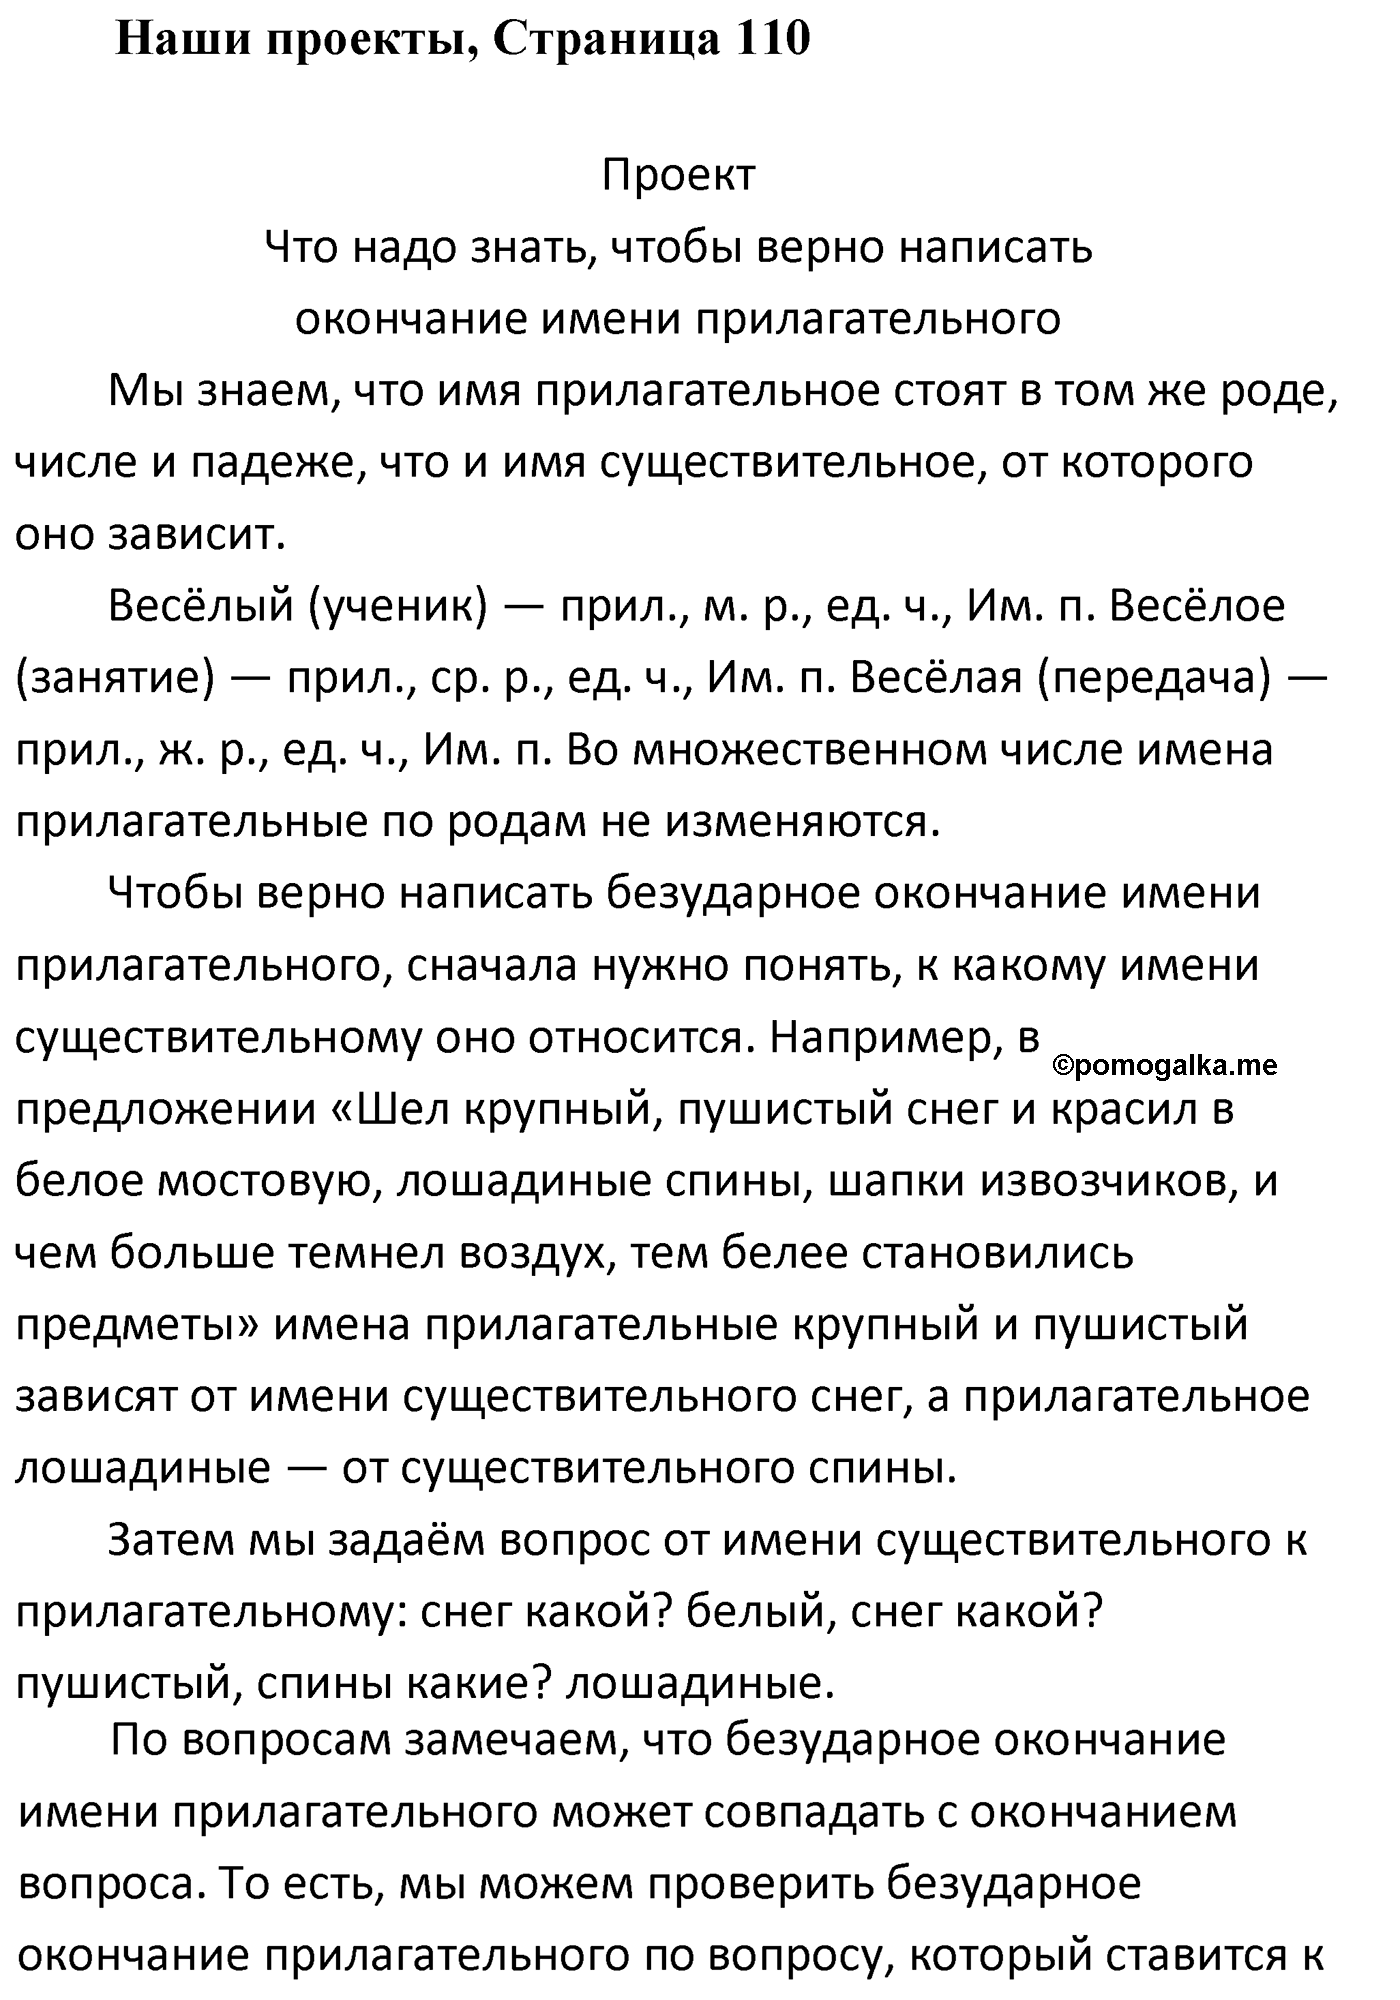 Страница 110, Наши проекты русский язык 4 класс Климанова 2022 год